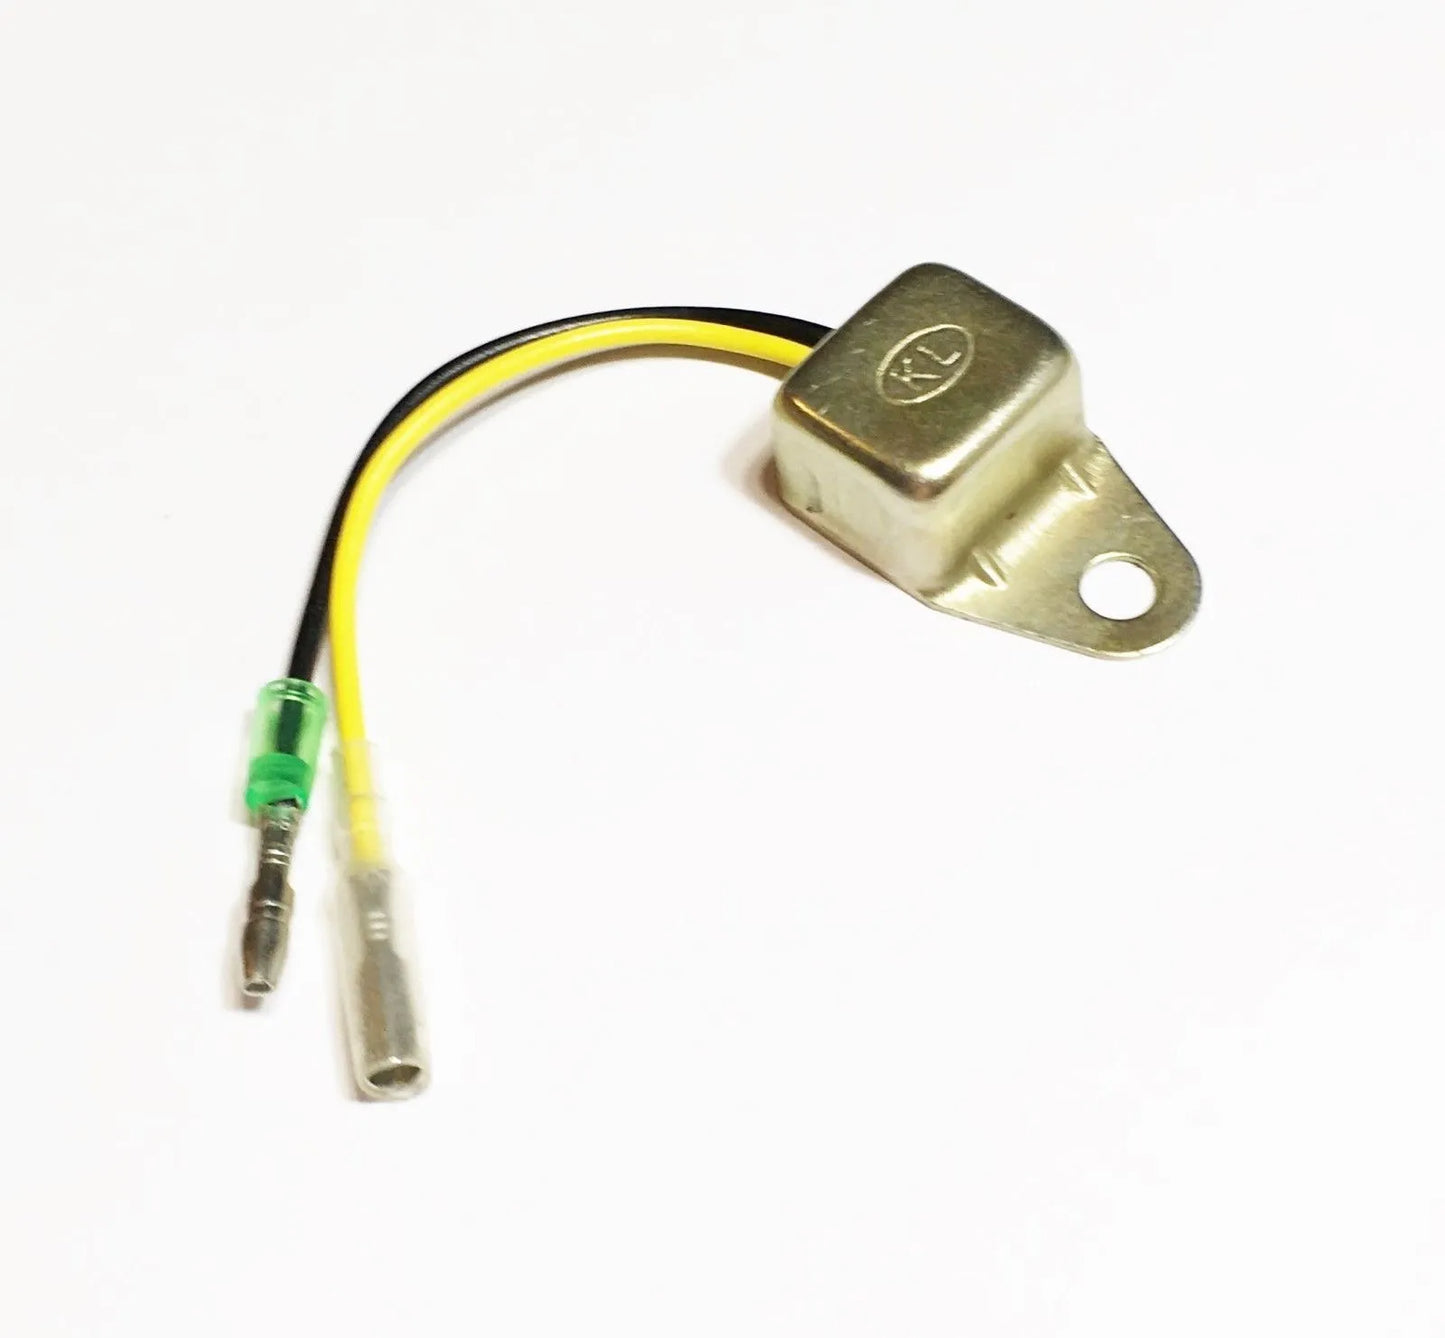 Interruptor de Sensor de alerta de aceite bajo, pieza probada, para Gx100 Gx120 Gx140 Gx140 Gx160 Gx200 Gx240 Gx270 Gx340 Gx390